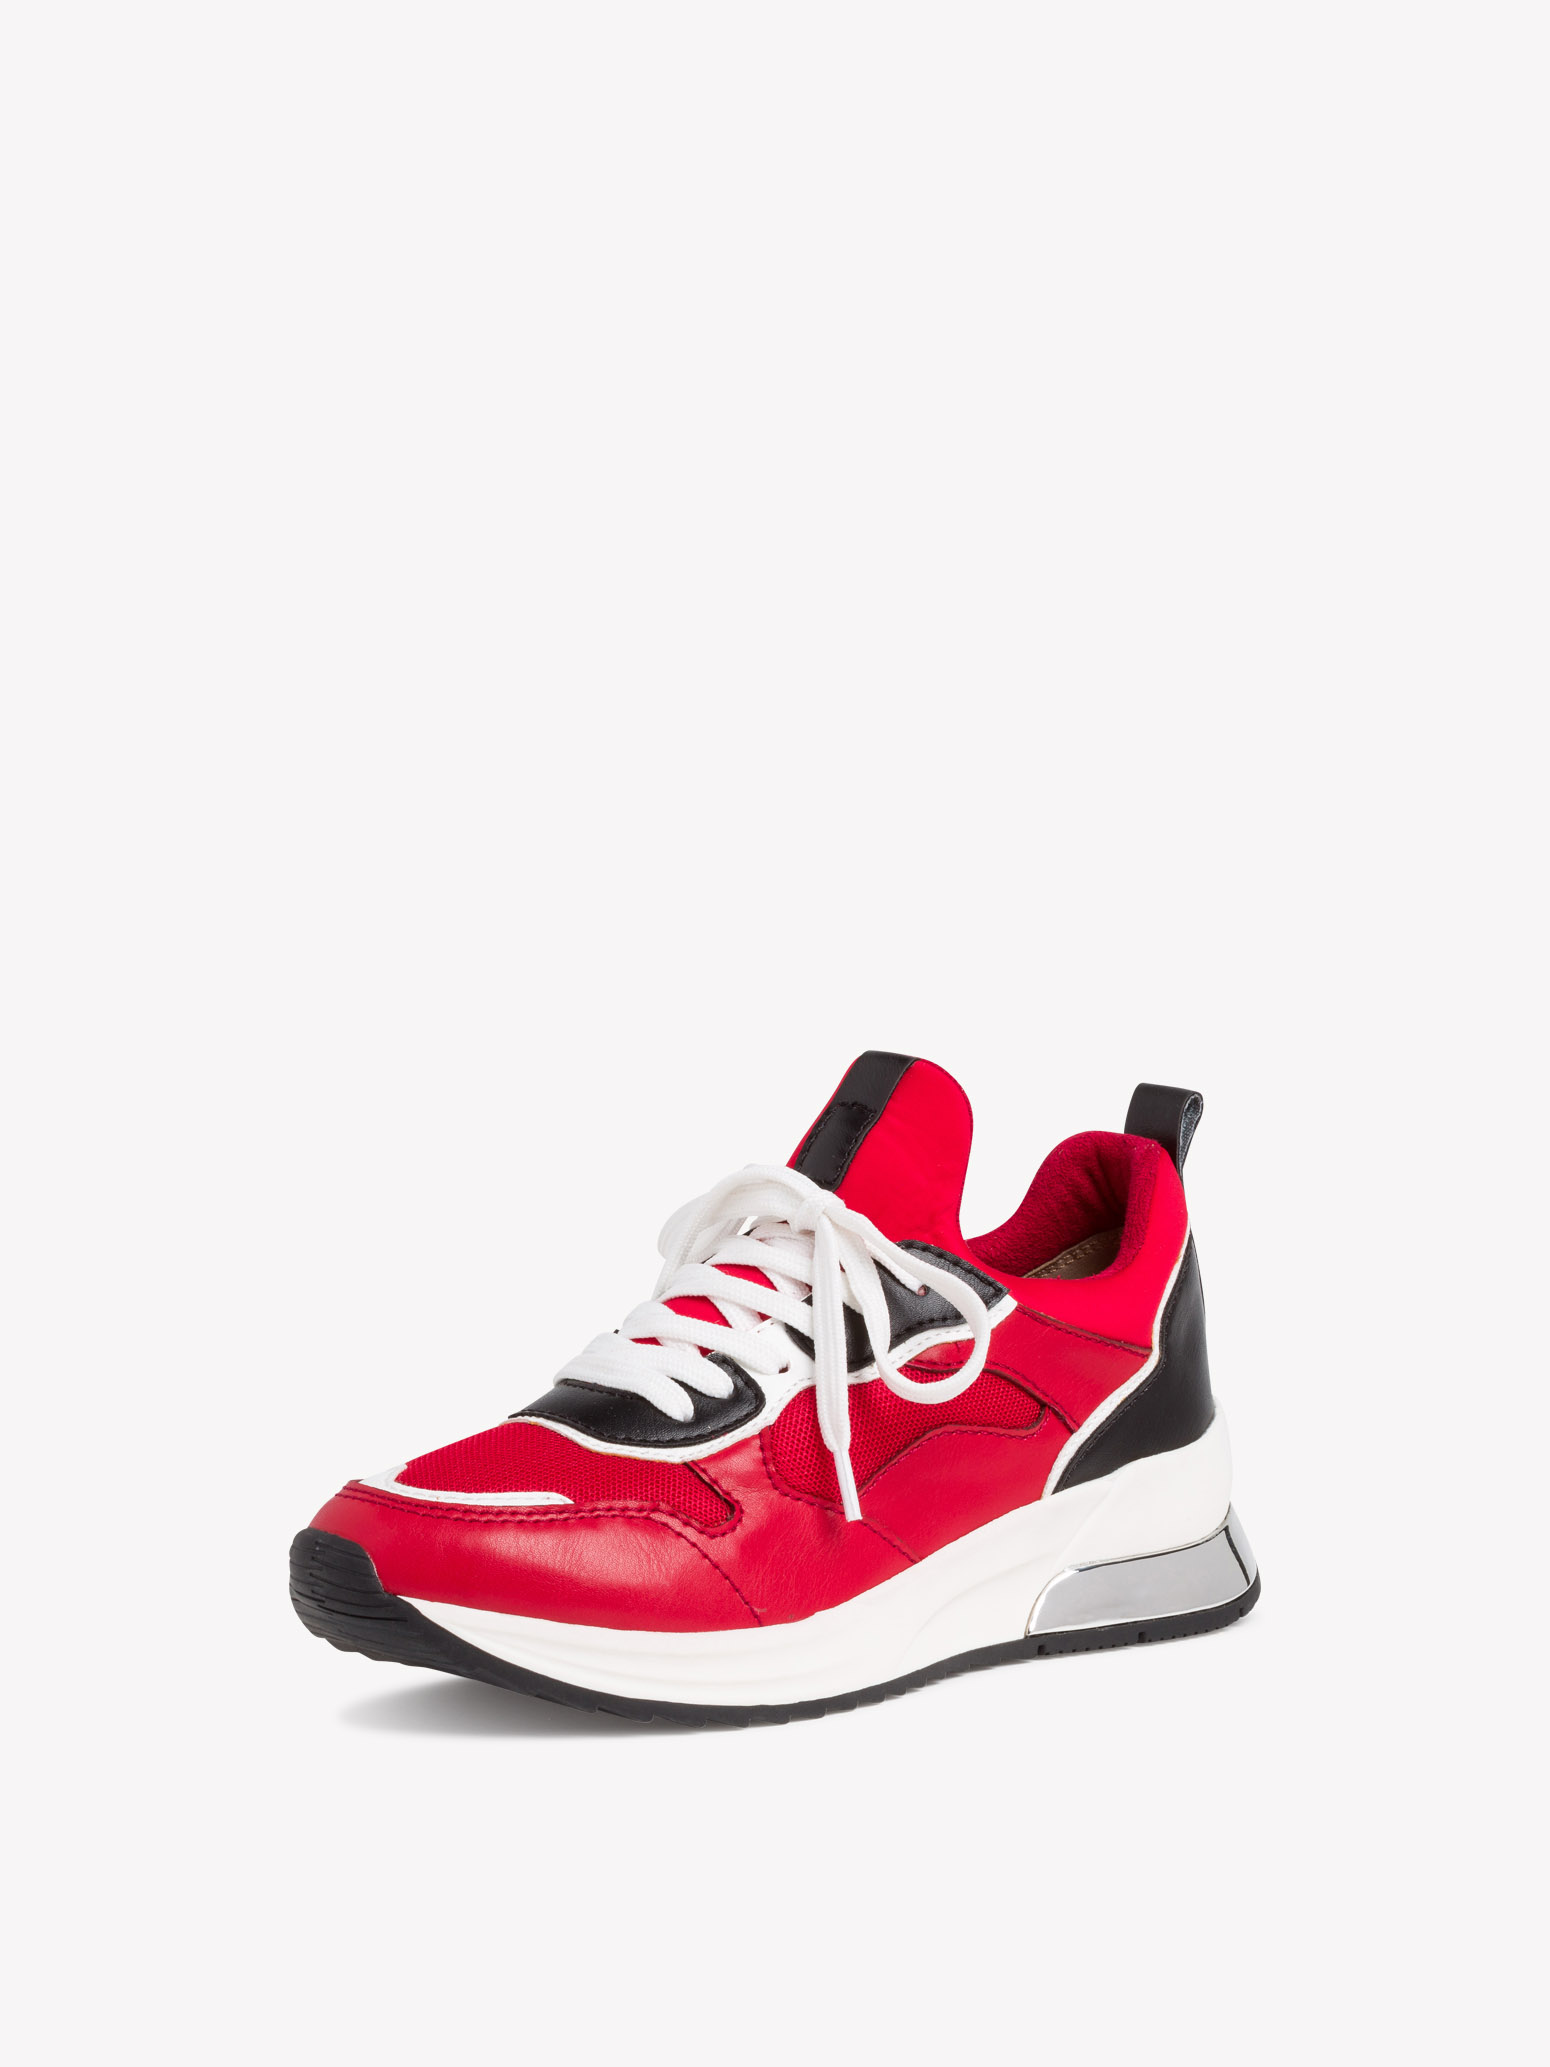 Ботинки на шнурках женские 4 SS20 (красный) - изображение №1